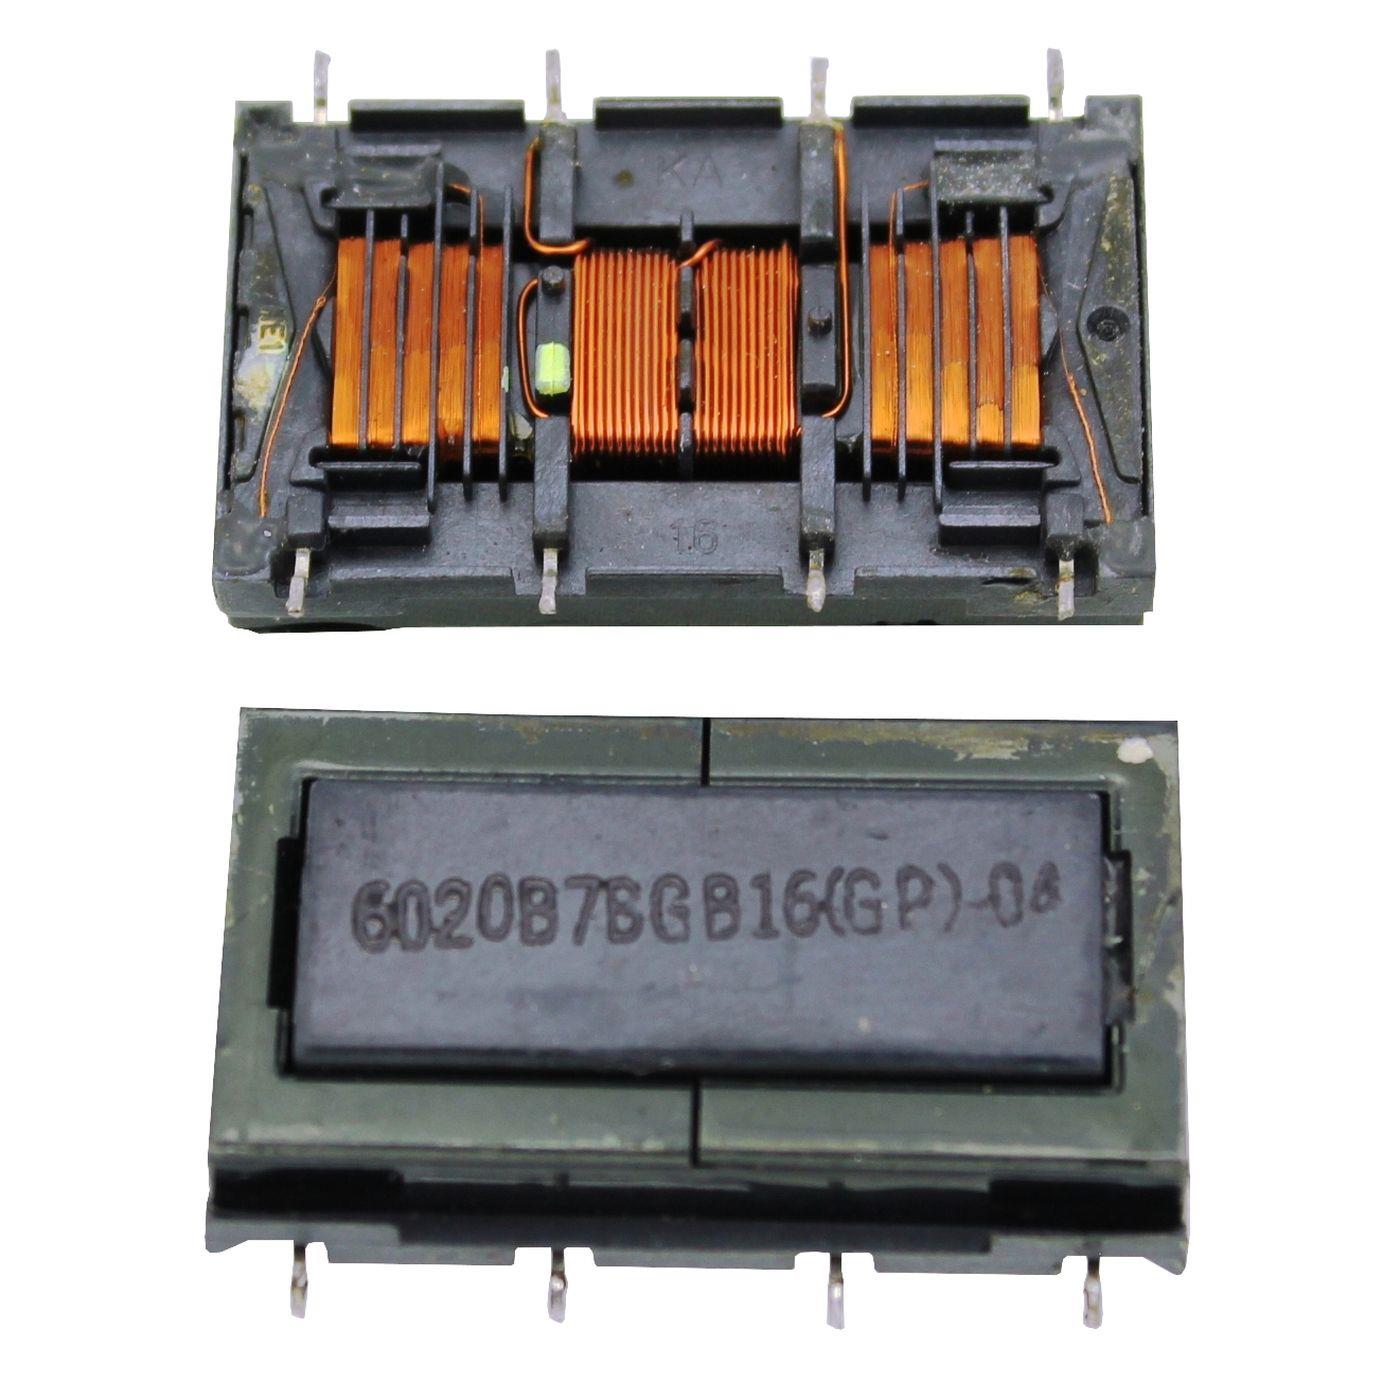 LCD Inverter Trafo Lumonic 6020B Inverterboard Trafo